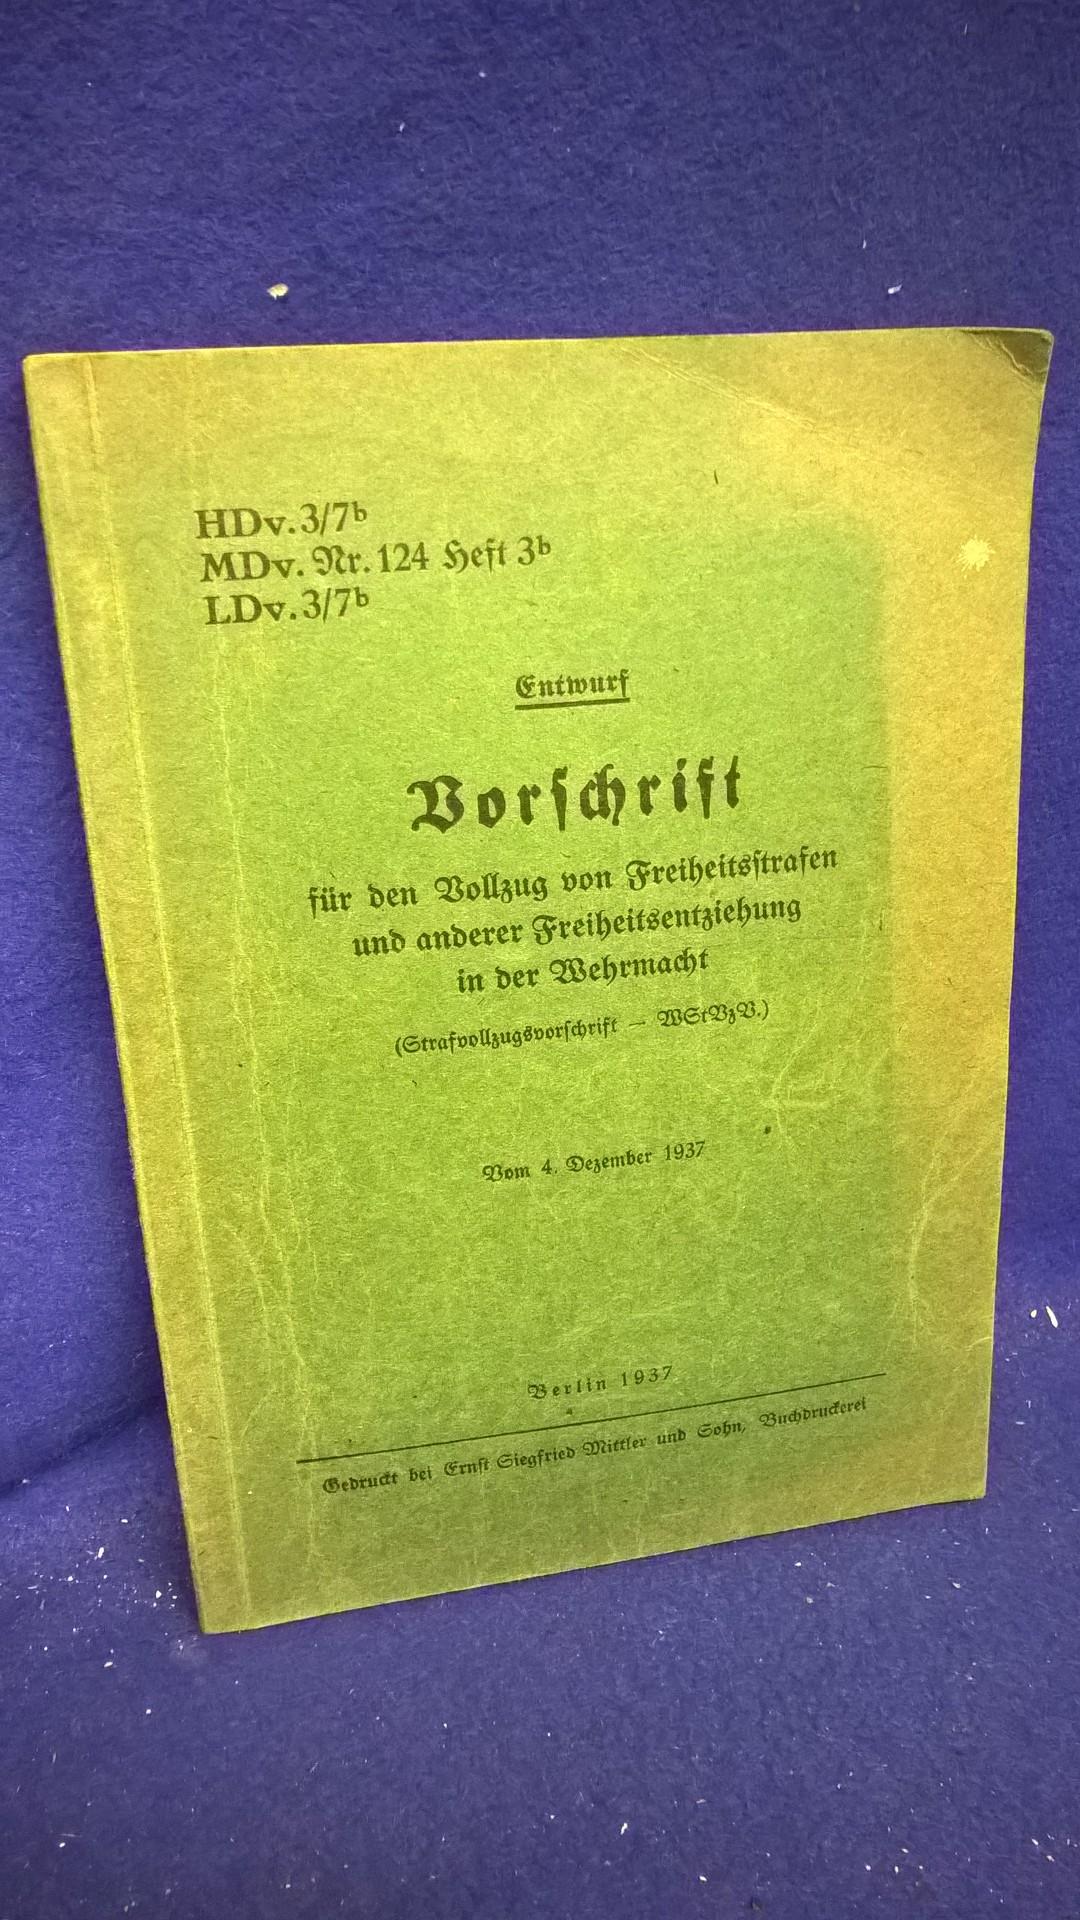 H.Dv. 3/76. Vorschrift für den Vollzug von Freiheitsstrafen und anderer Freiheitsentziehung in der Wehrmacht ( Strafvollzugsvorschrift).